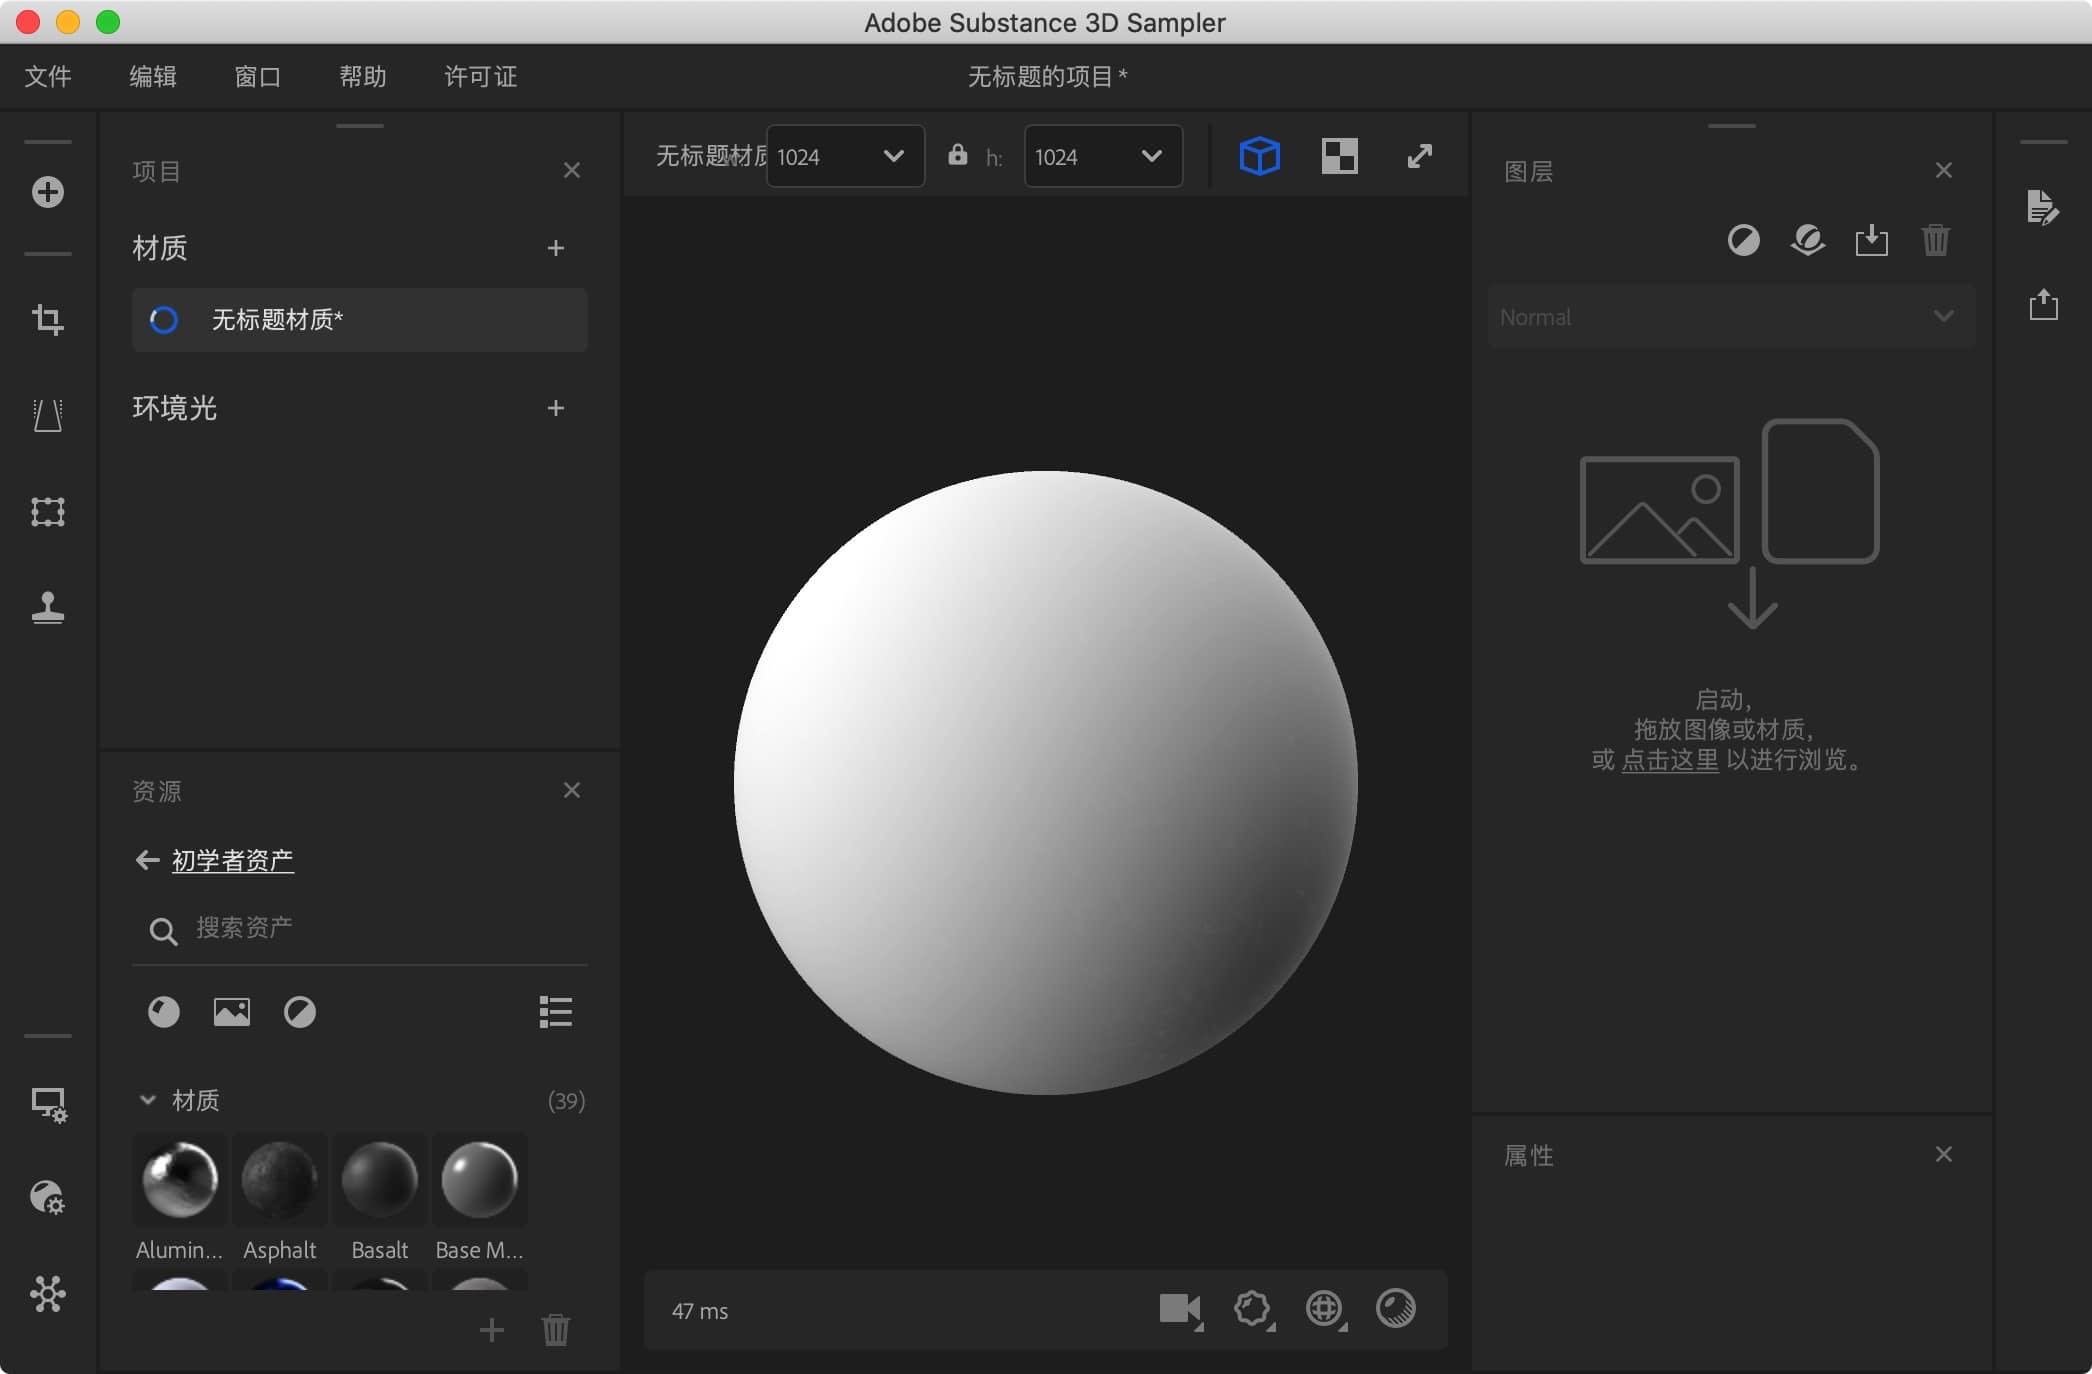 Adobe Substance 3D Sampler 3.3.1 for mac adobe 3D素材管理